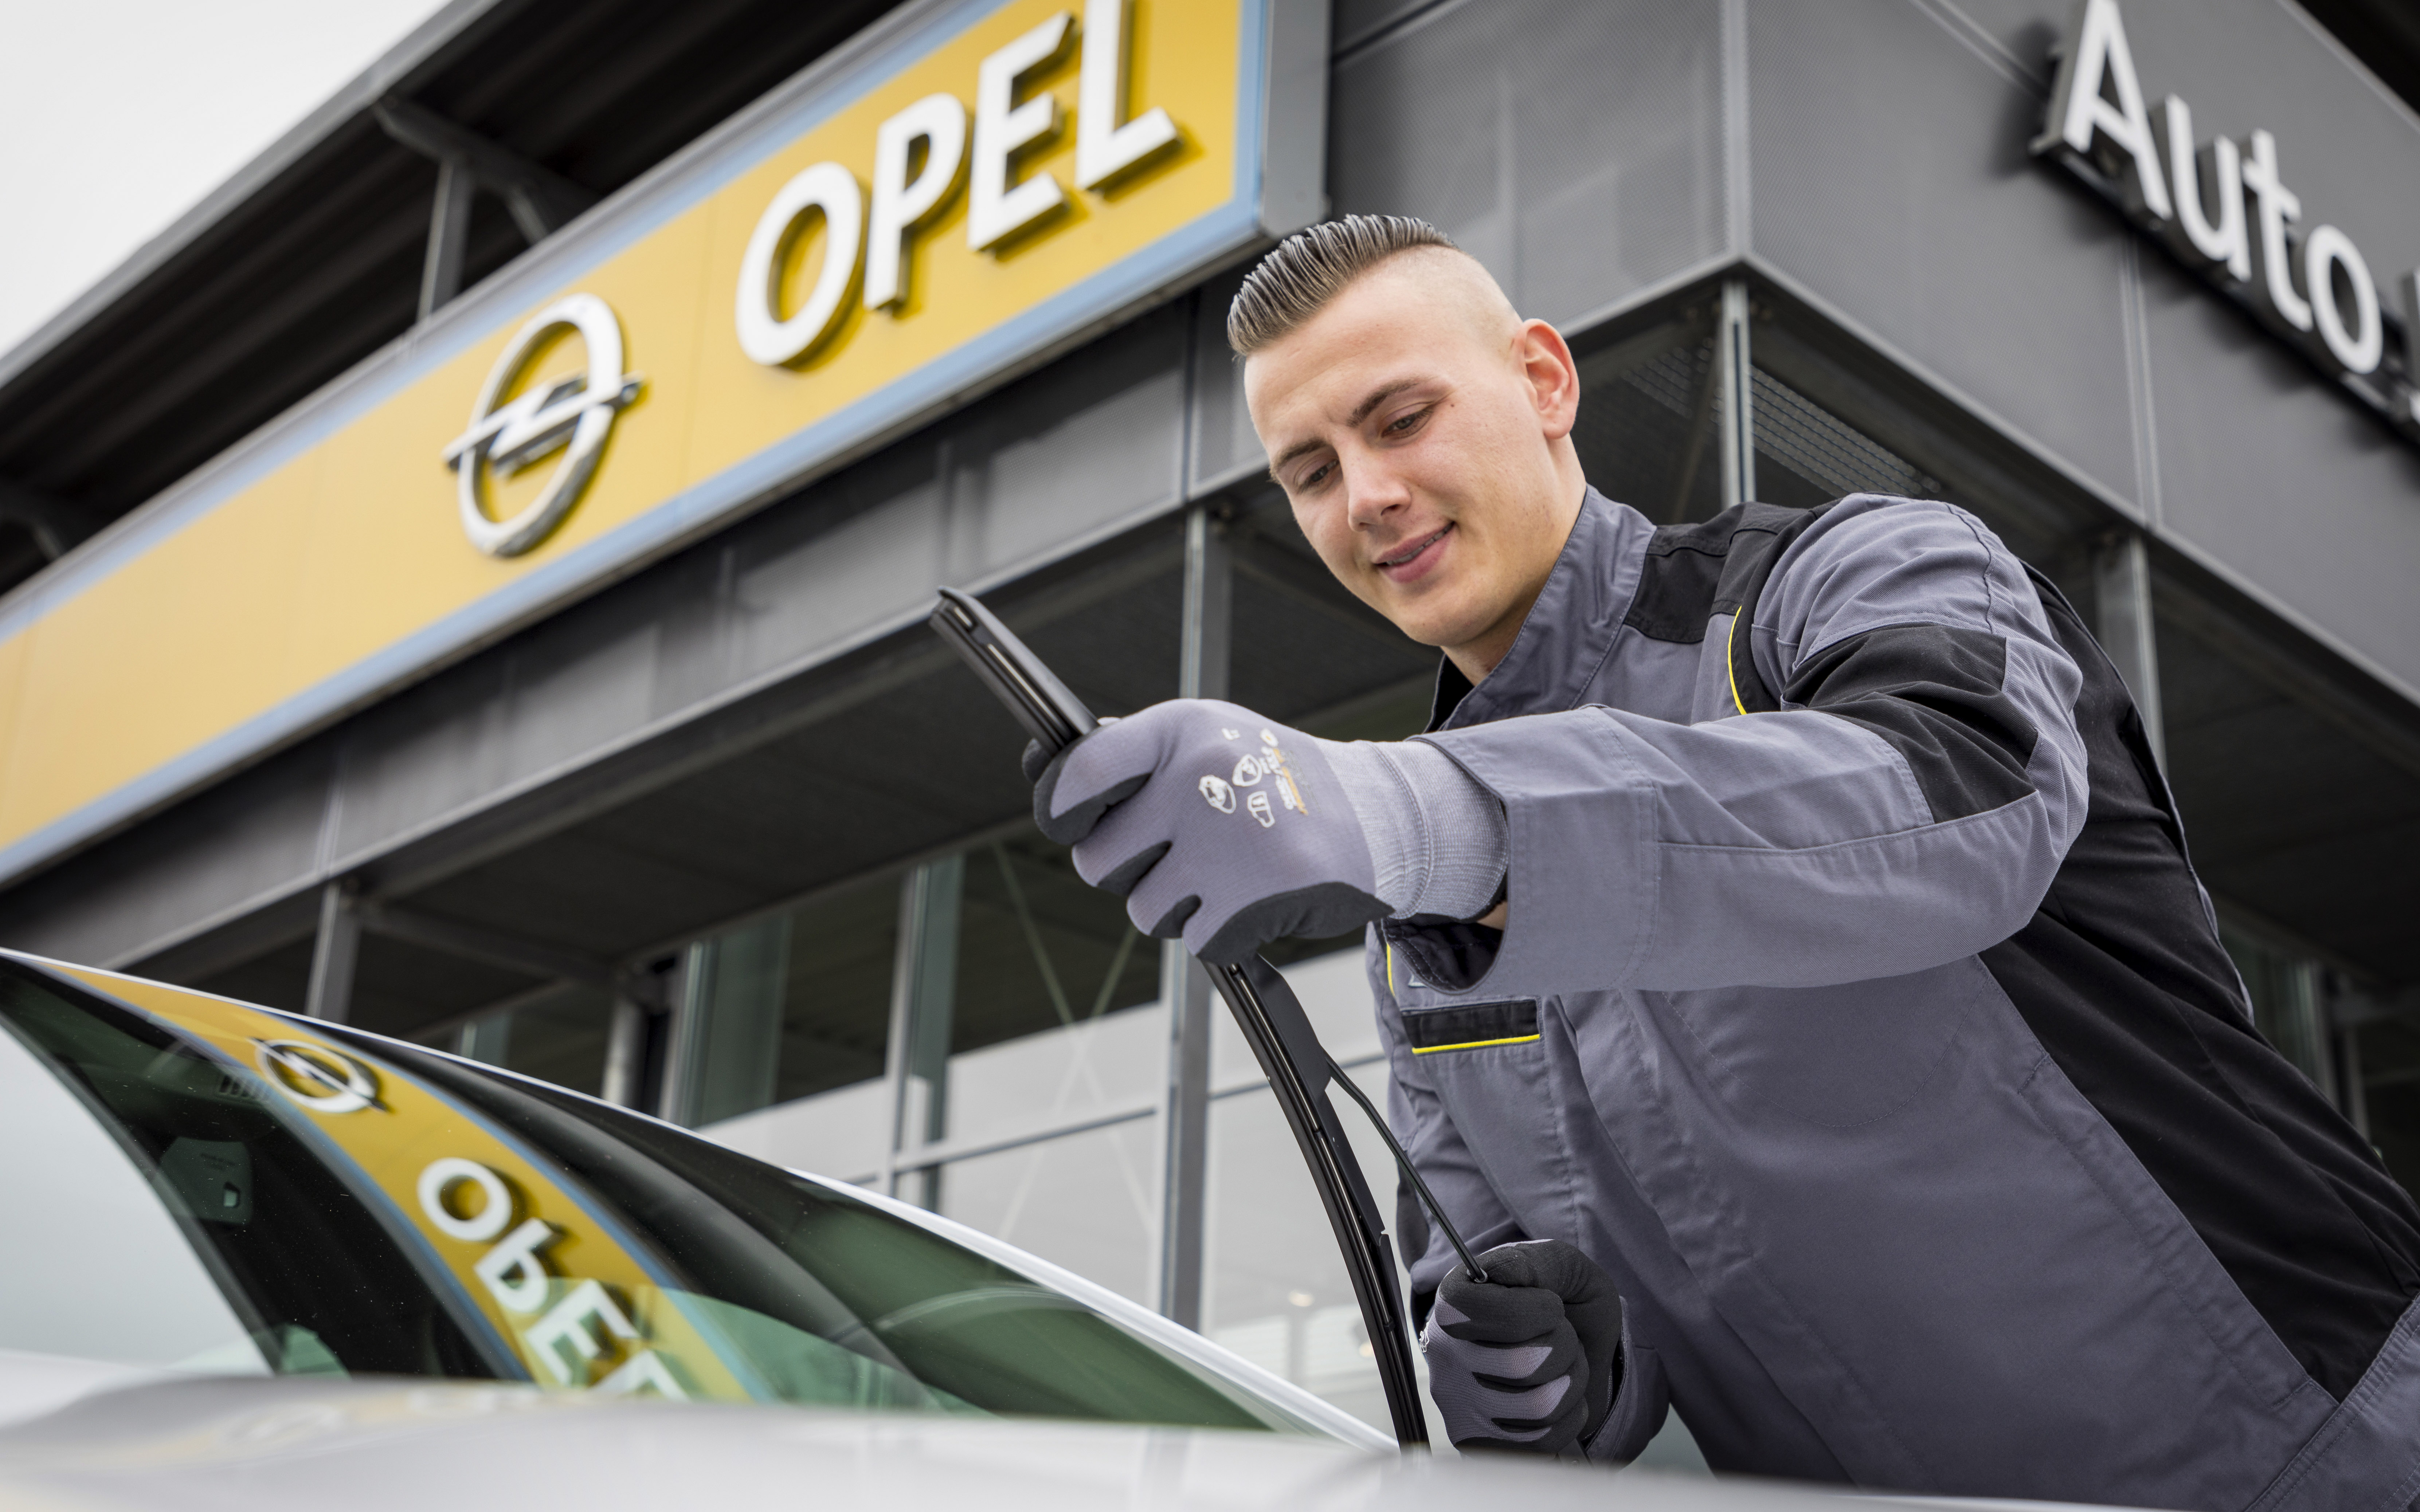 Автомобиль ремонт опель. Opel service. Автосалон Opel. Опель сервис в Москве. Опель в сервисе механика.